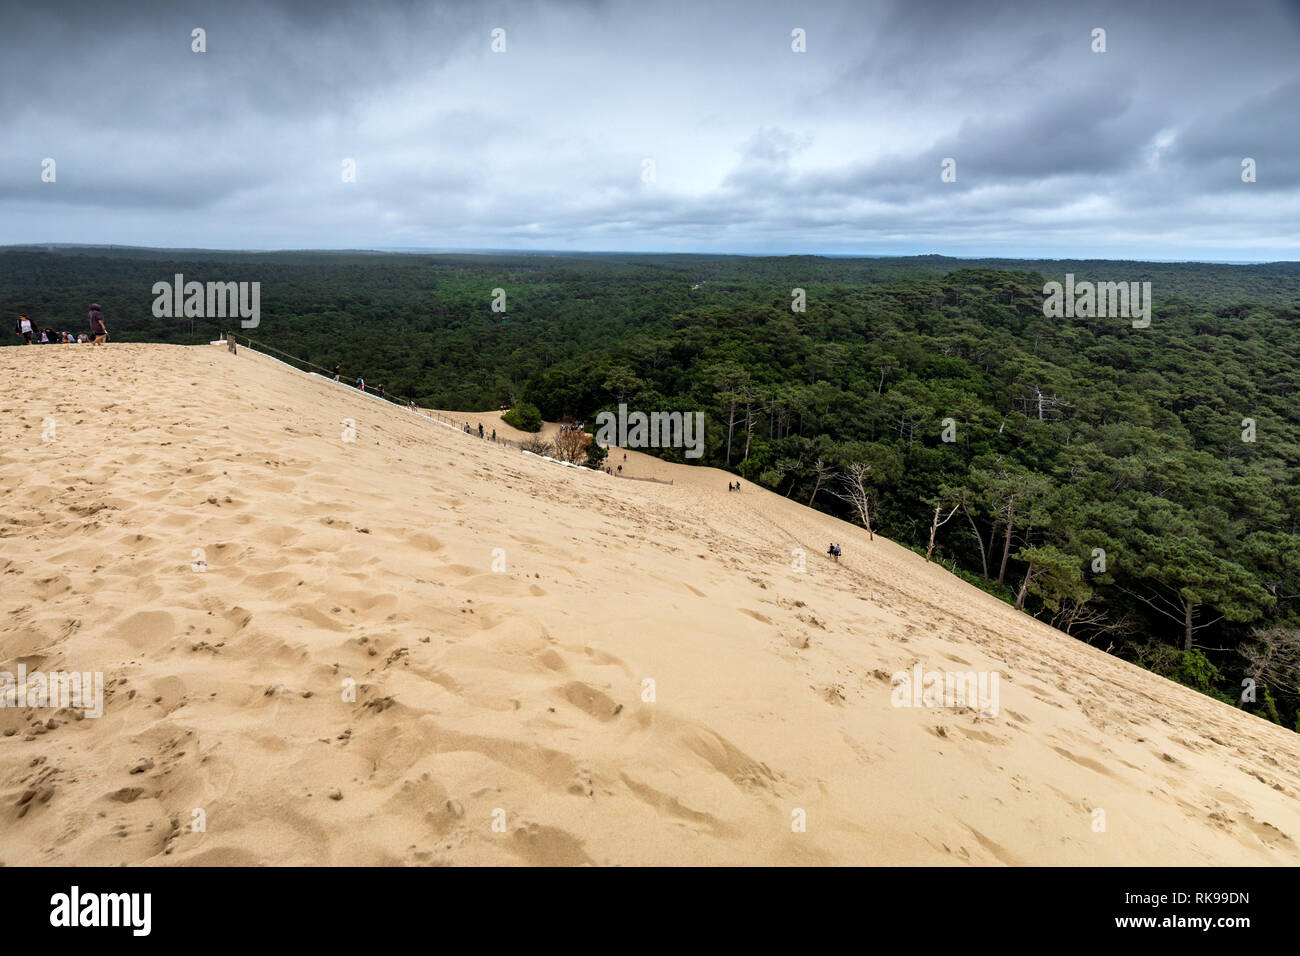 La Dune du Pilat La dune de sable la plus haute d'Europe situé à La Teste-de-Buch dans la région de la Baie d'arcachon france, 60 km de Bordeaux Banque D'Images